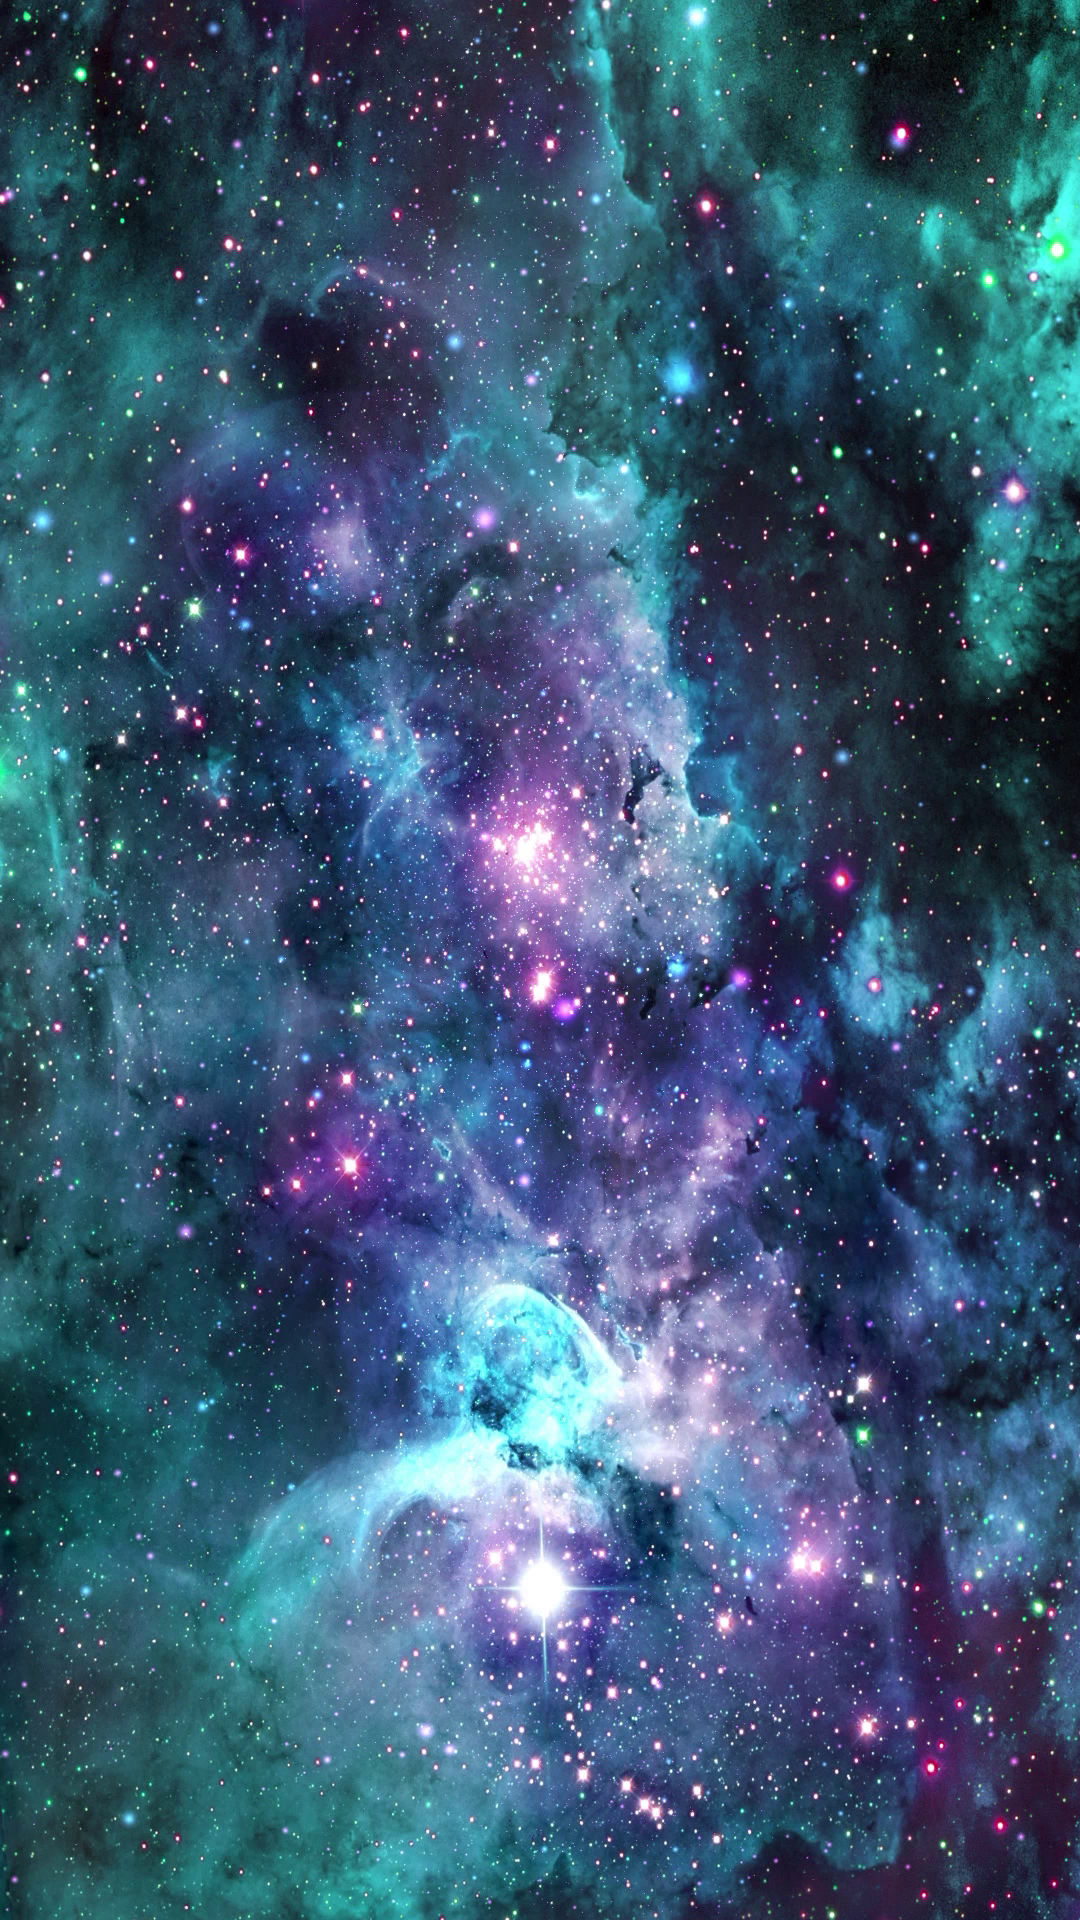 Hình nền thiên văn học trực tiếp: Chiêm ngưỡng vẻ đẹp kỳ vĩ của vũ trụ tại ngôi nhà của bạn với hình nền thiên văn học trực tiếp. Đắm chìm trong không gian bao la, đầy những ngôi sao sáng lấp lánh và những hành tinh lạ thú. Đây sẽ là một trải nghiệm tuyệt vời cho những ai yêu thích khoa học và vũ trụ.